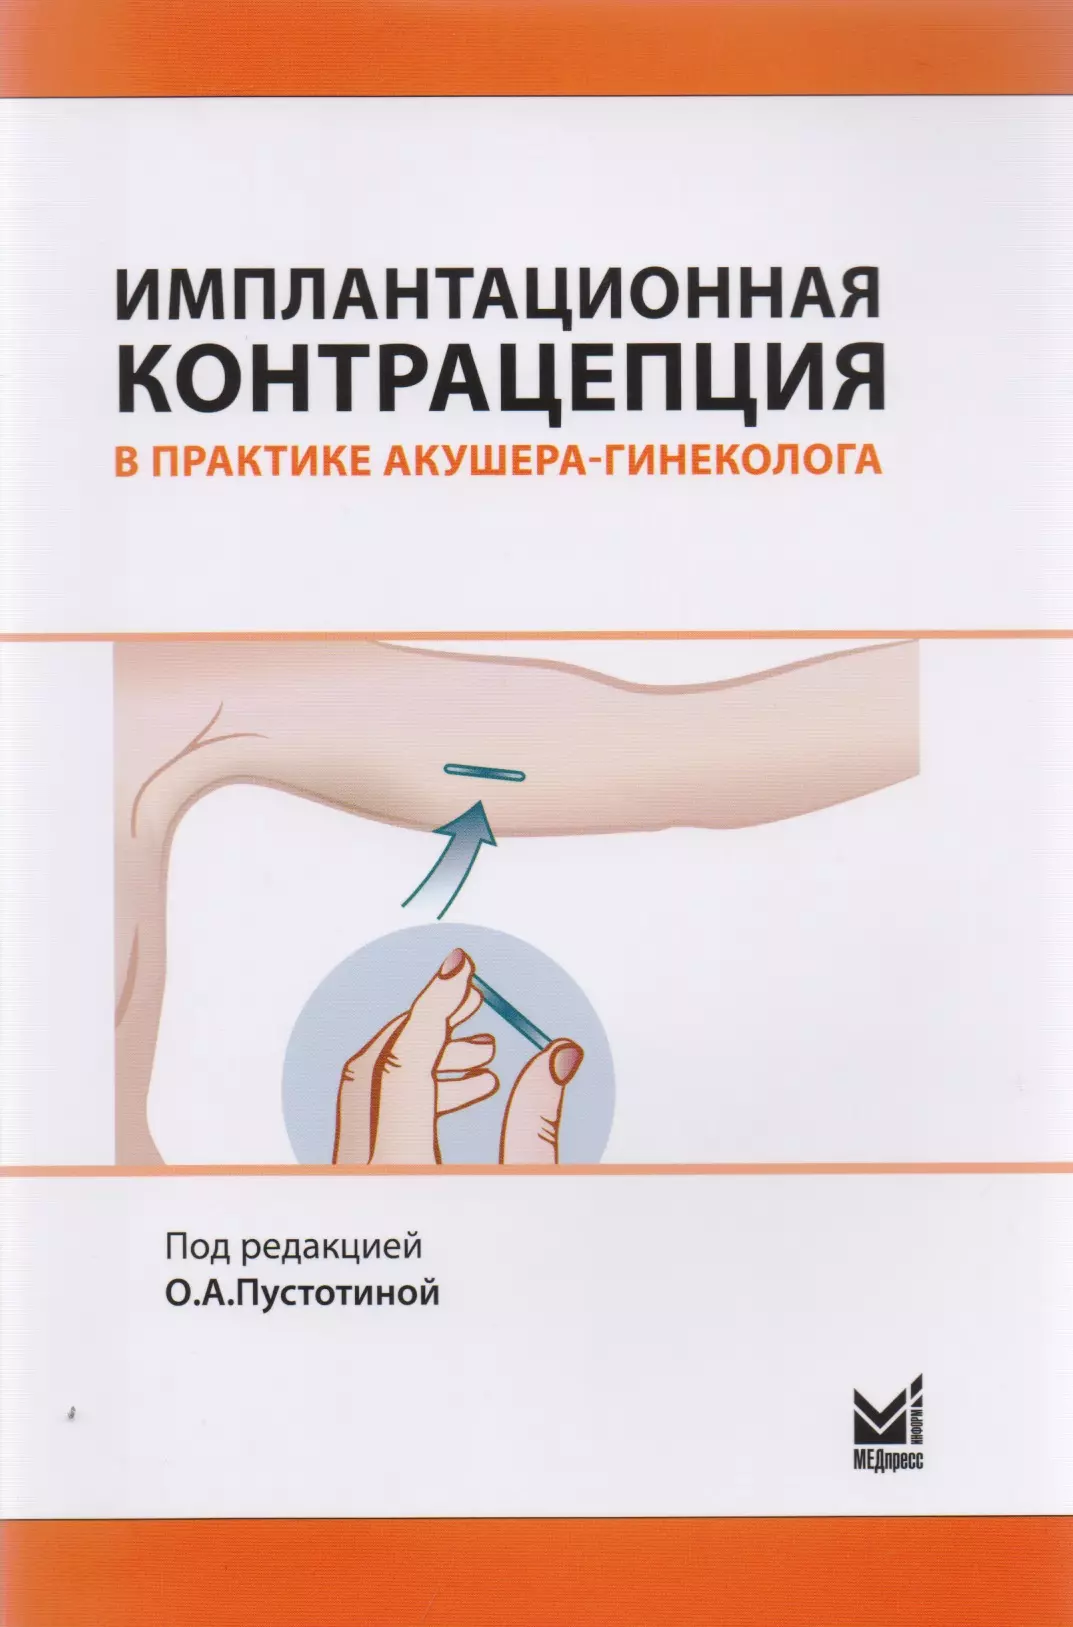 Имплантационная контрацепция в практике акушера-гинеколога филиппов о нормы этики и права в практике акушера гинеколога